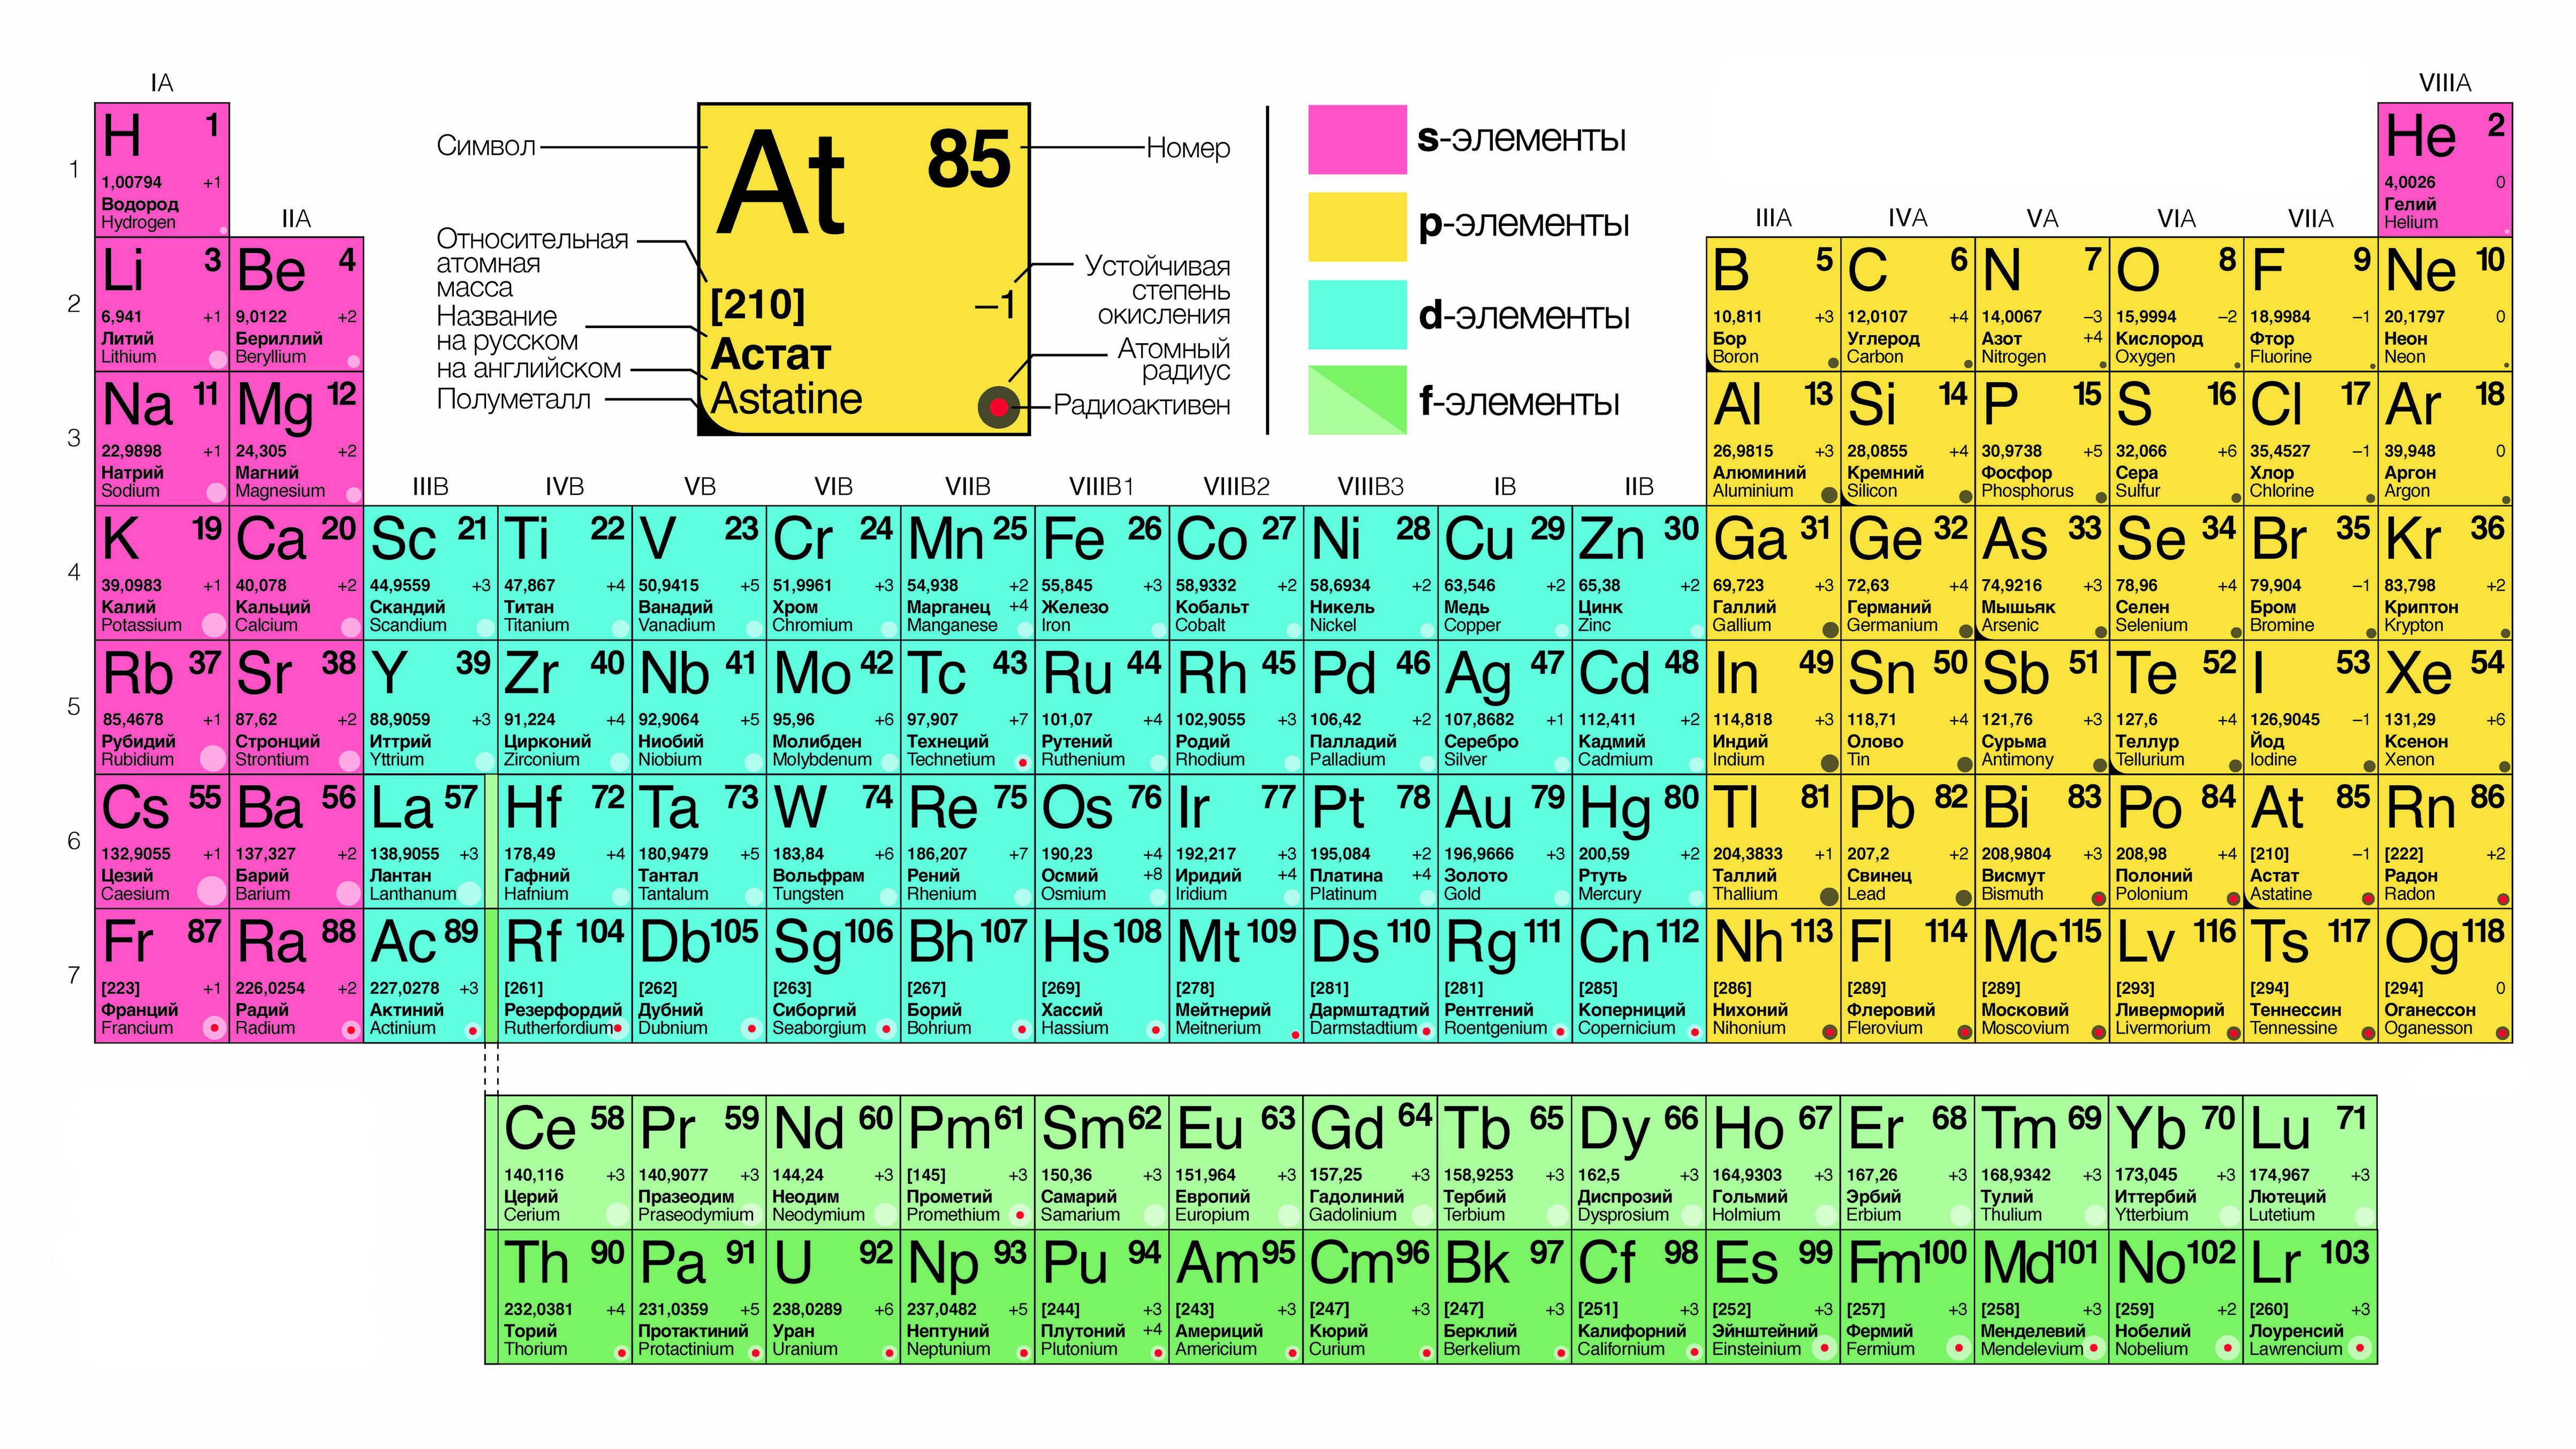 Презентация по химии 8 класс знаки химических элементов периодическая таблица д и менделеева